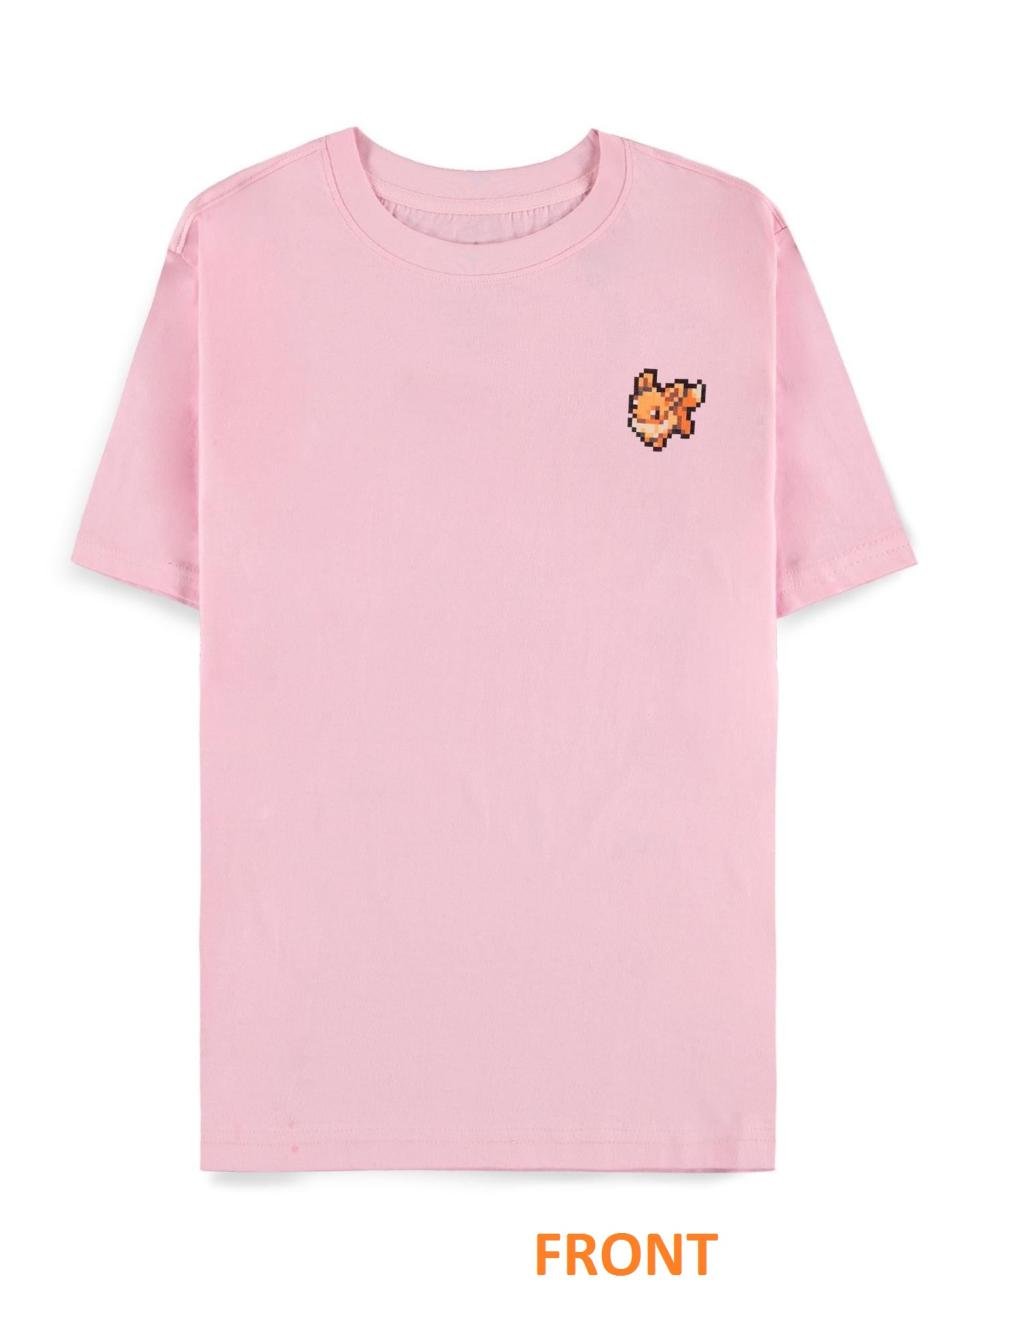 POKEMON - Pixel Eevee - Women T-Shirt (S)